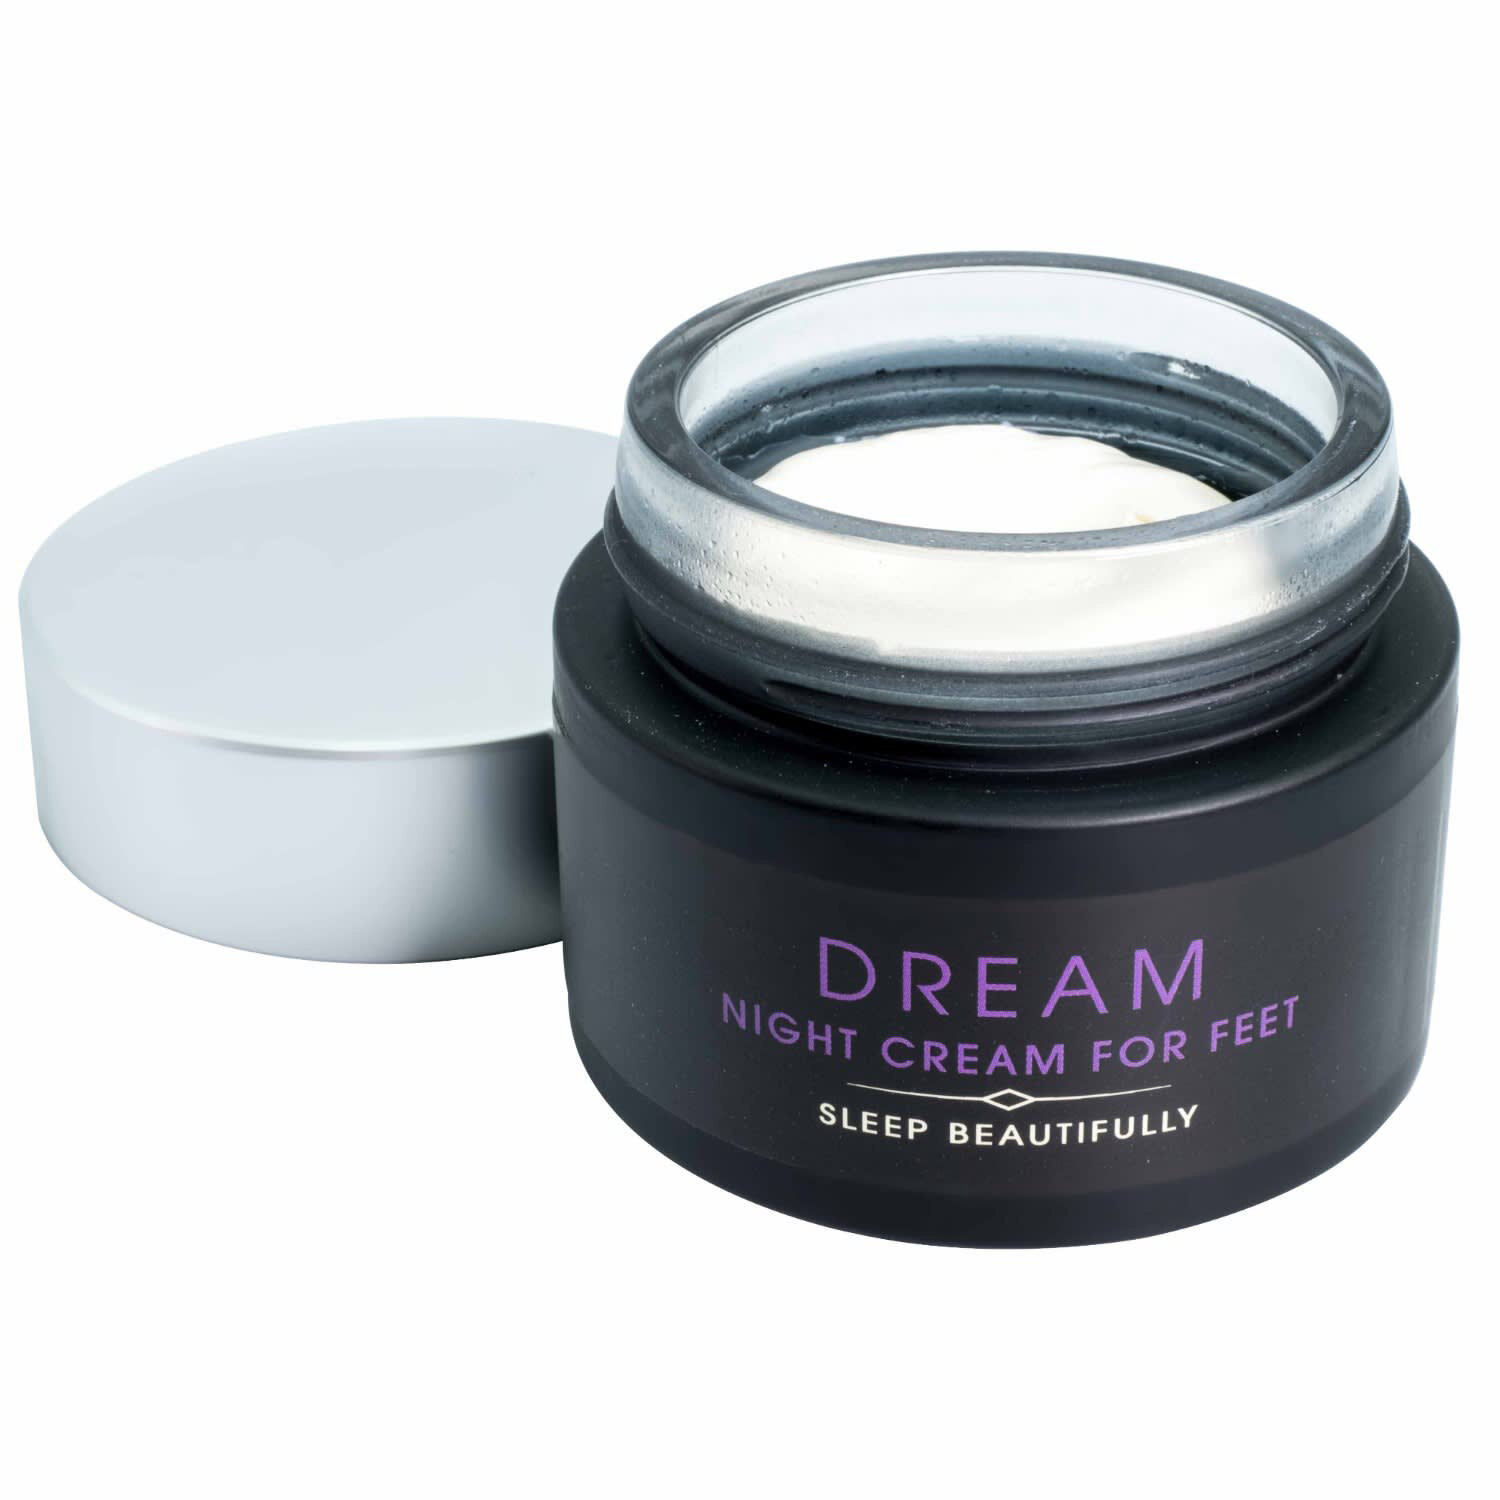 Dream Night Cream for Feet, £26, Kiss the Moon